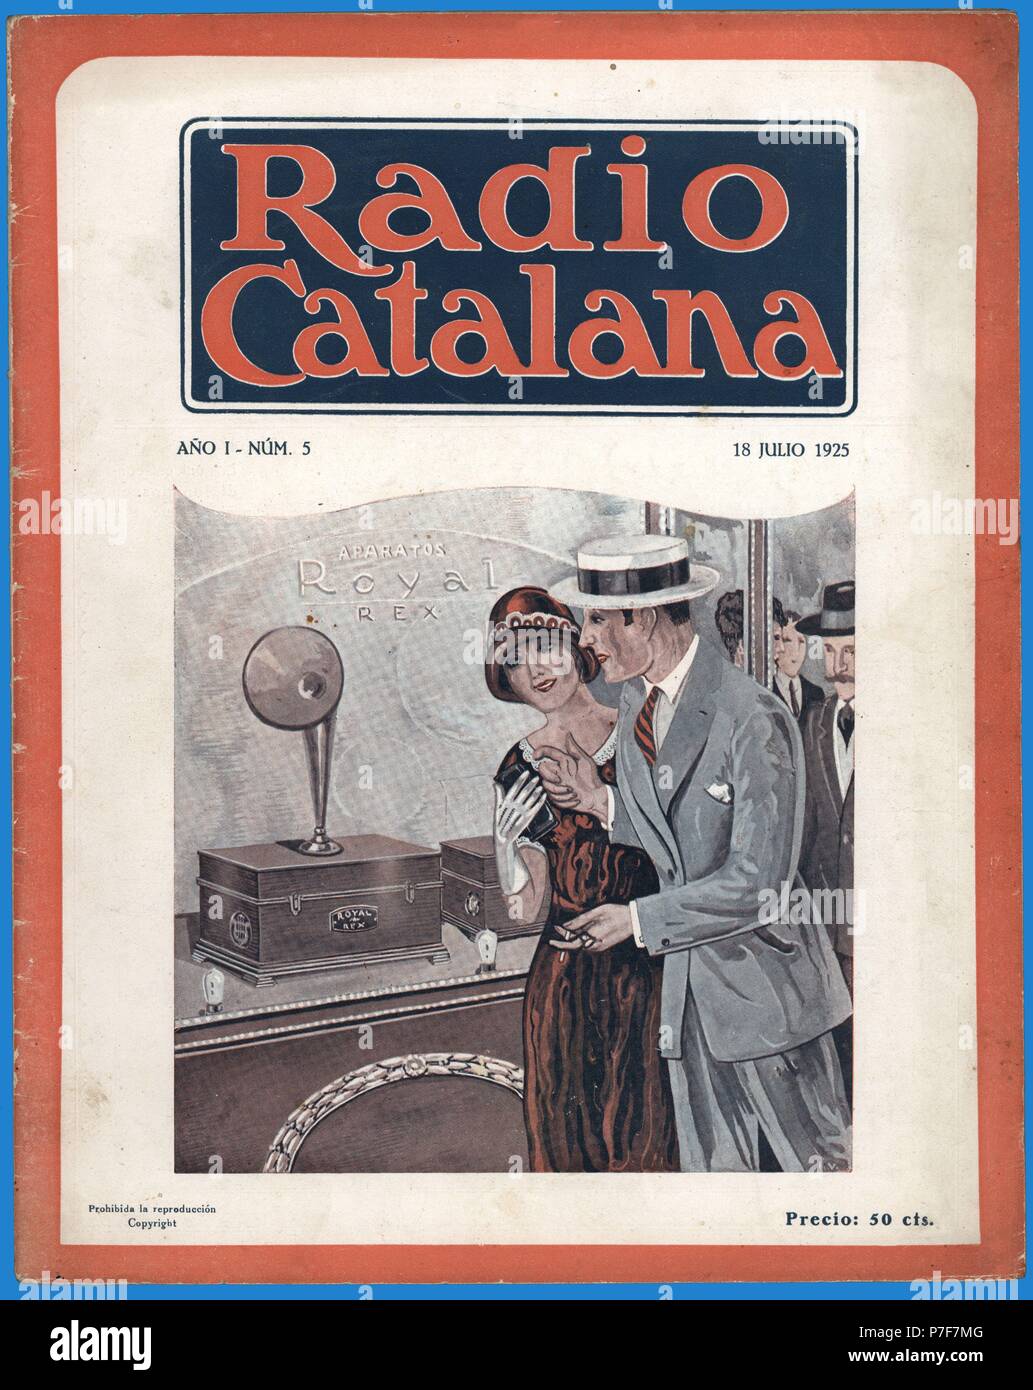 Portada de la revista semanal Radio Catalana, órgano oficial de la emisora radiofónica. Barcelona, julio de 1925. Stock Photo